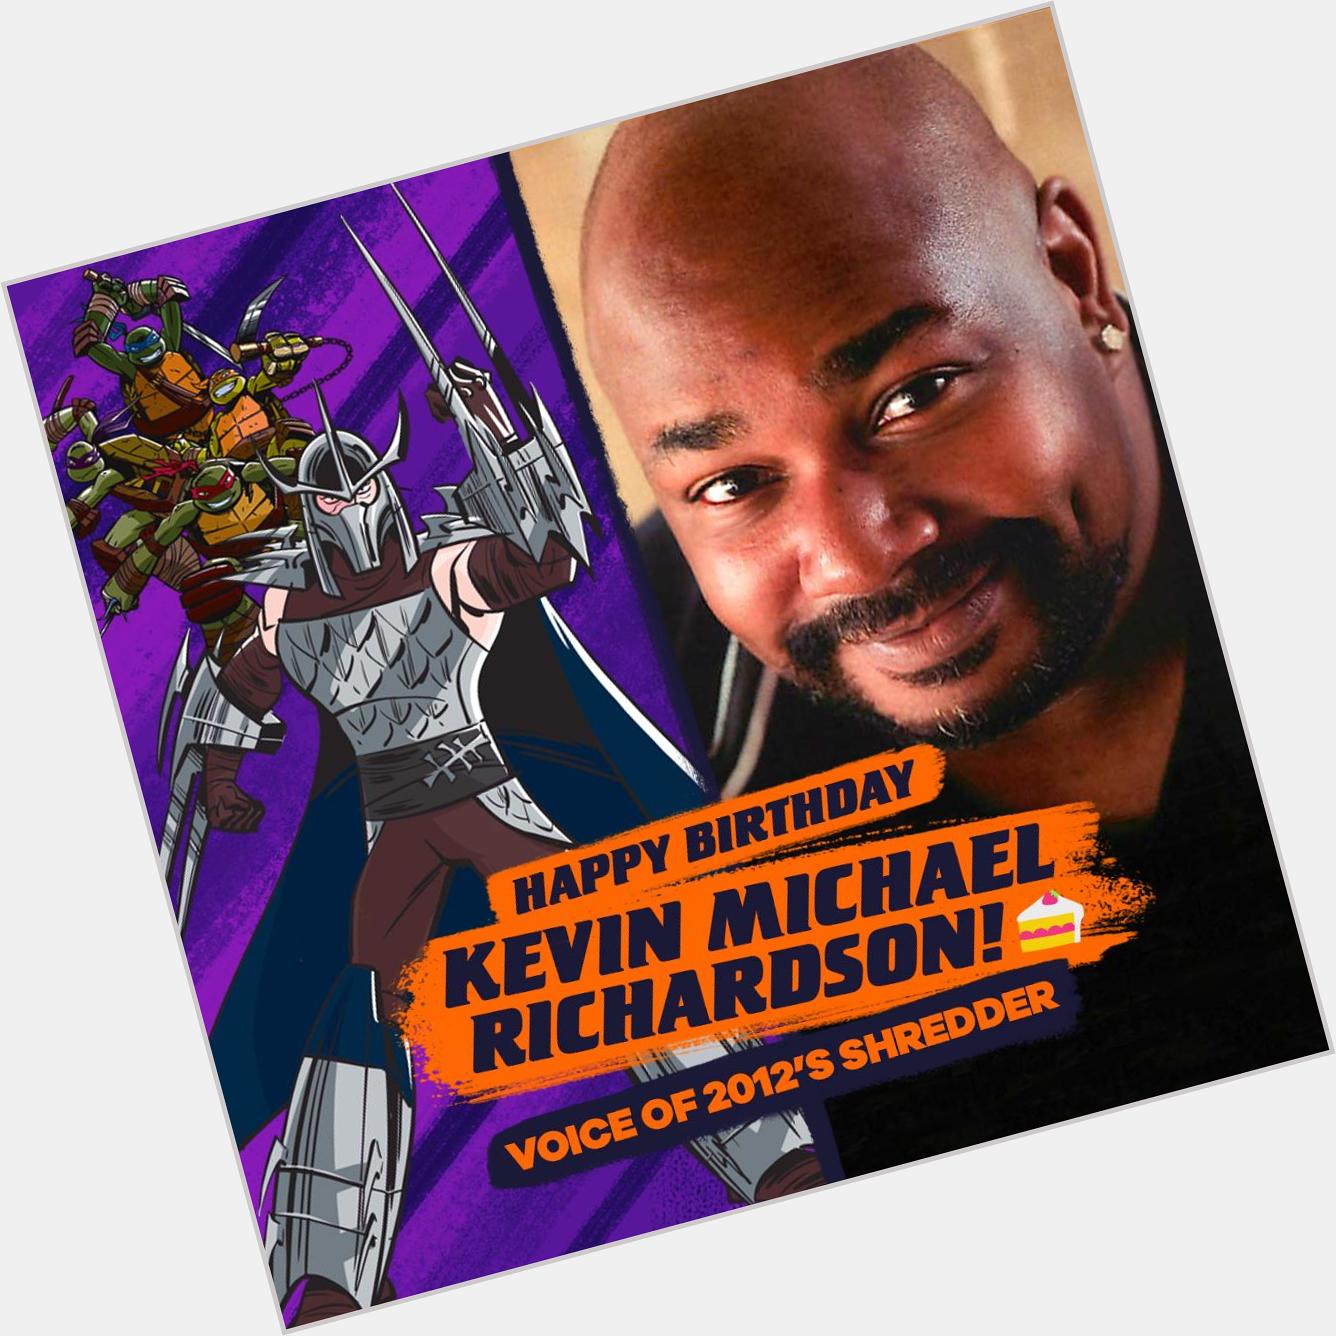 Happy Birthday Kevin Michael Richardson, voice of Shredder! 